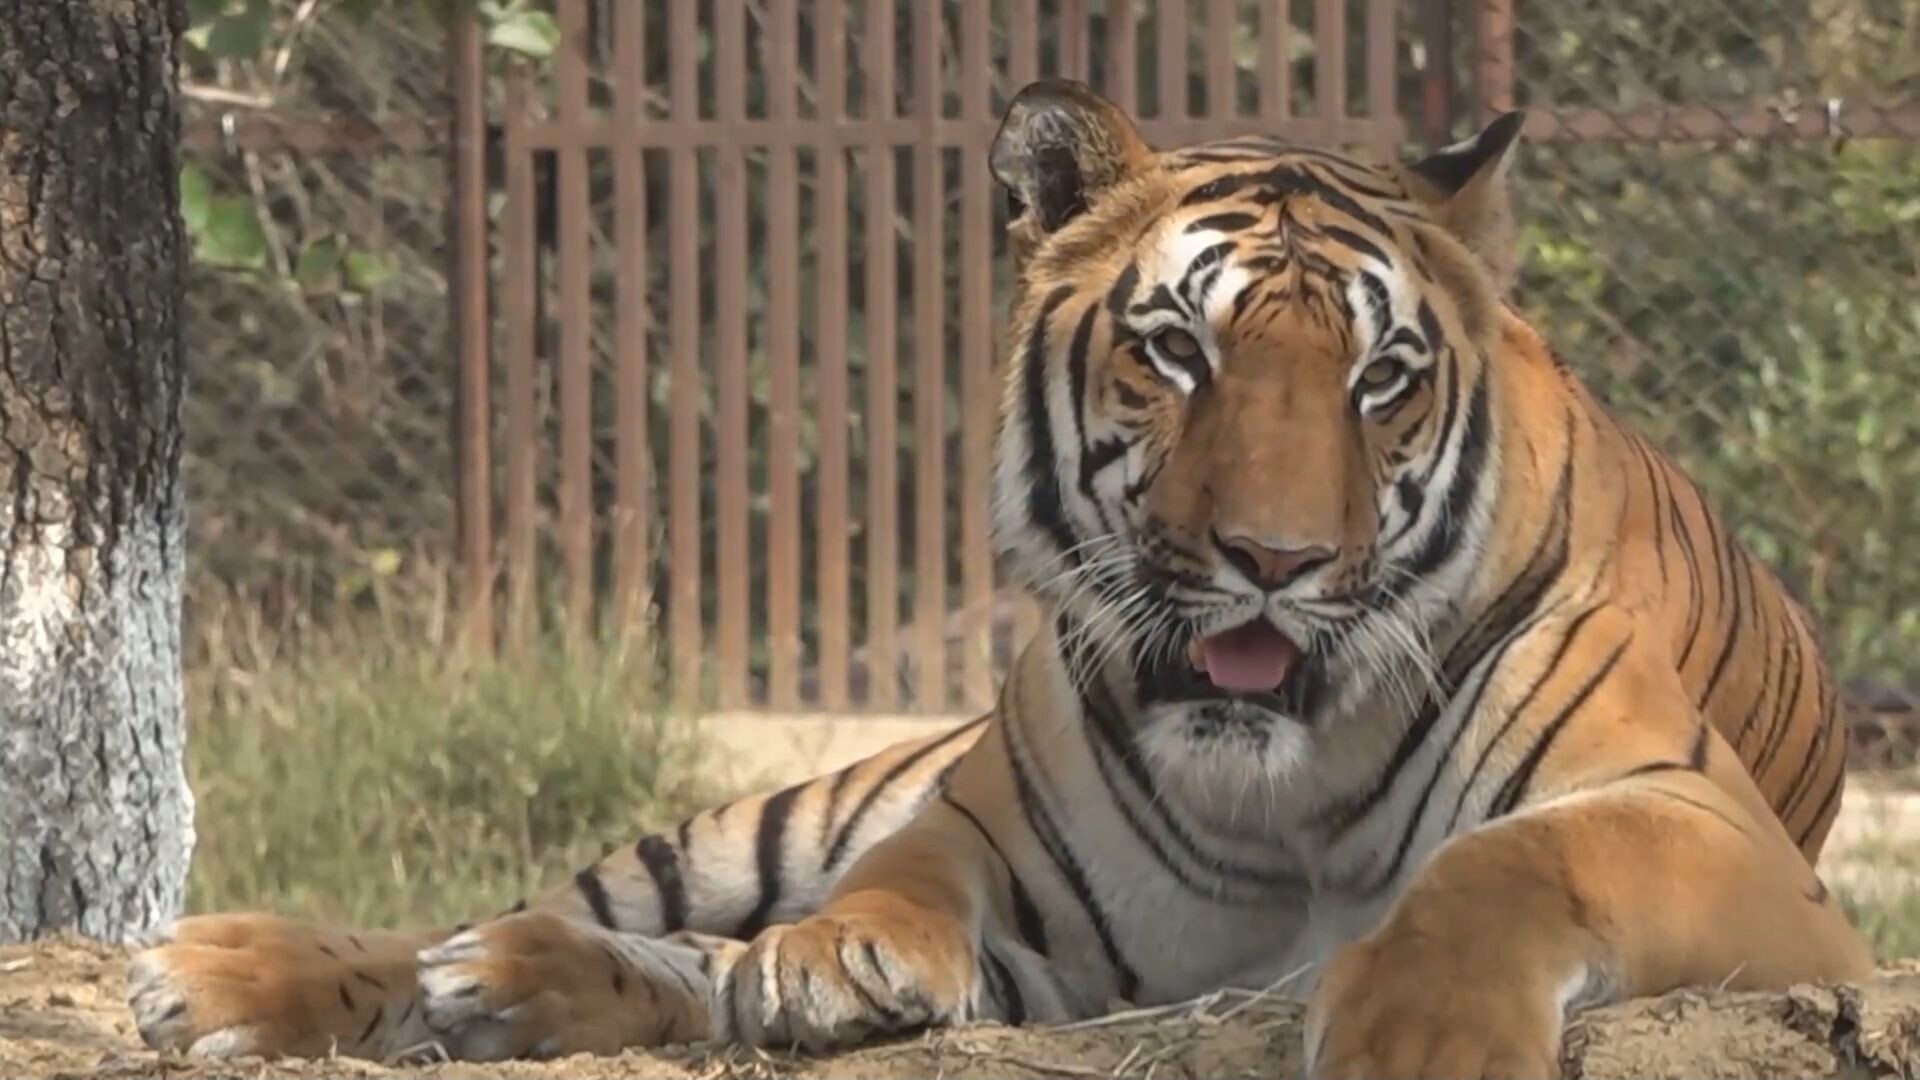 อินเดียพบประชากร 'เสือ' เพิ่มขึ้นกว่า 6% ต่อปี